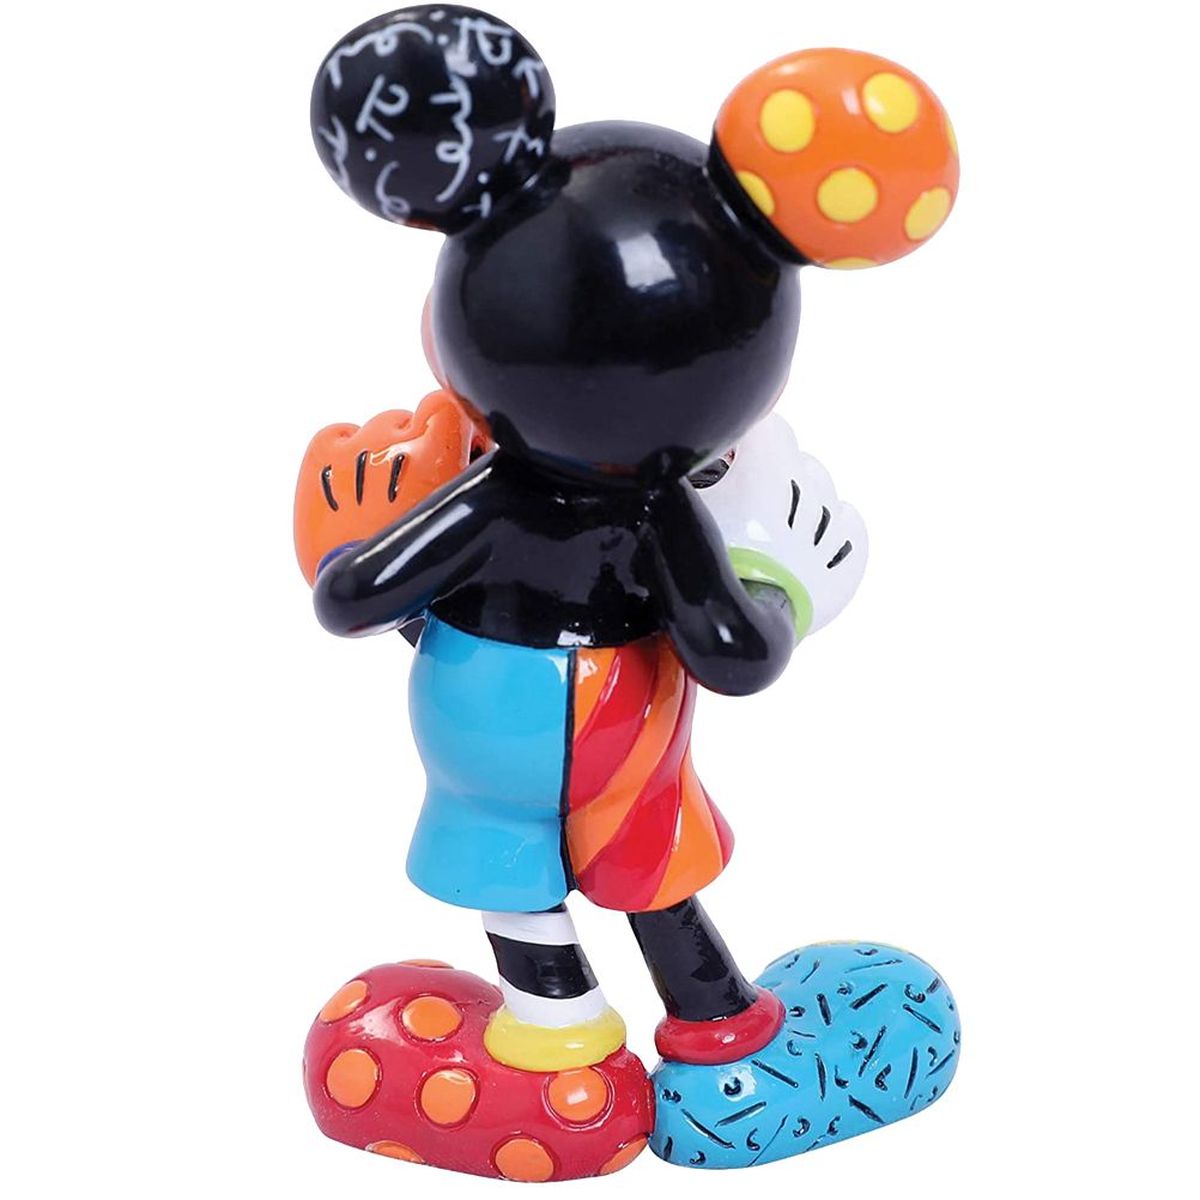 Mickey Figurine Collection By Romero Britto